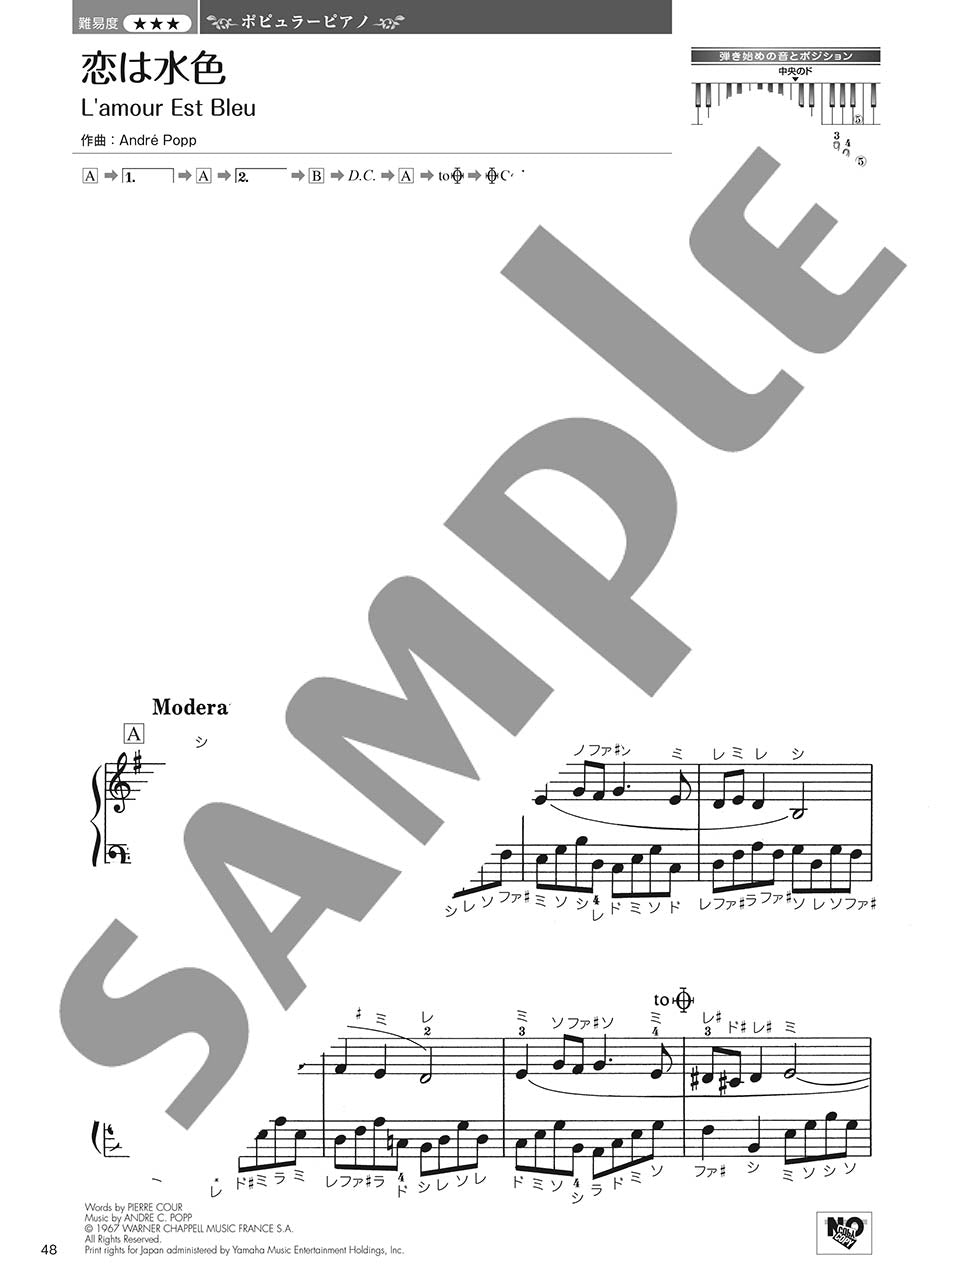 やさしく弾ける 大人のためのピアノレパートリー60 Vol.1_4